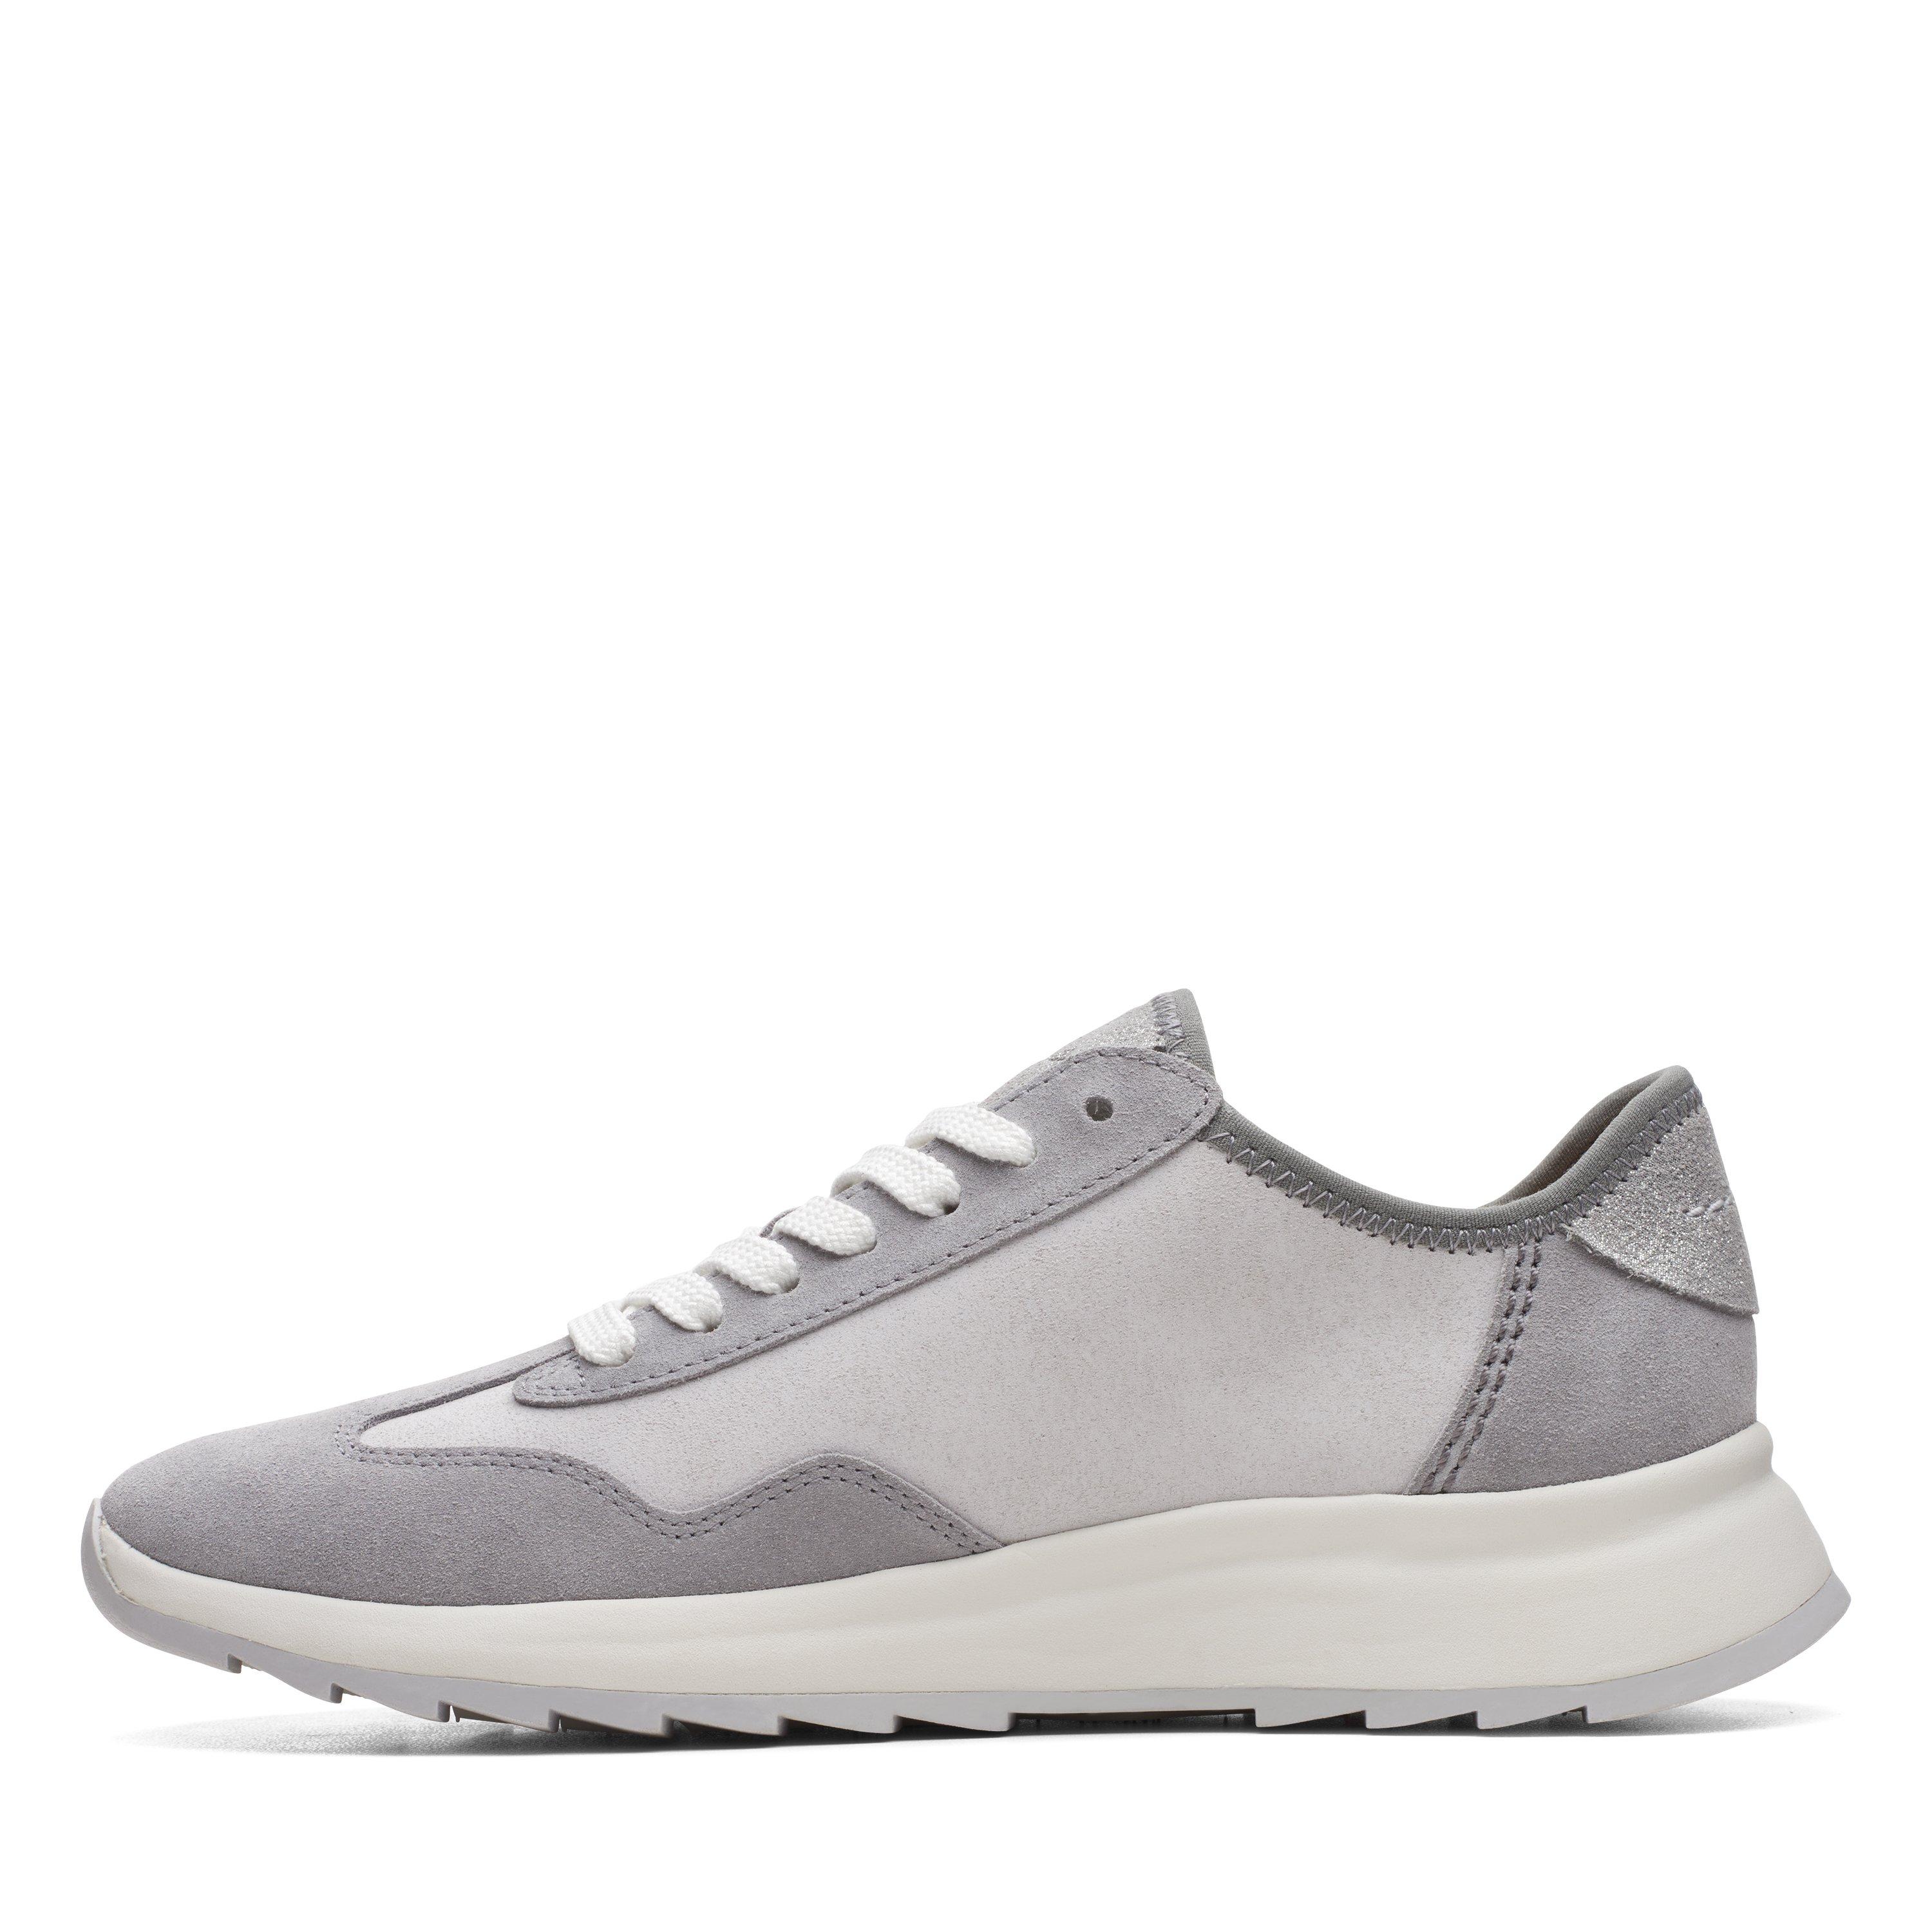 Clarks Womens Dash Lite Lo Grey Suede Active Sneaker Shoes | eBay